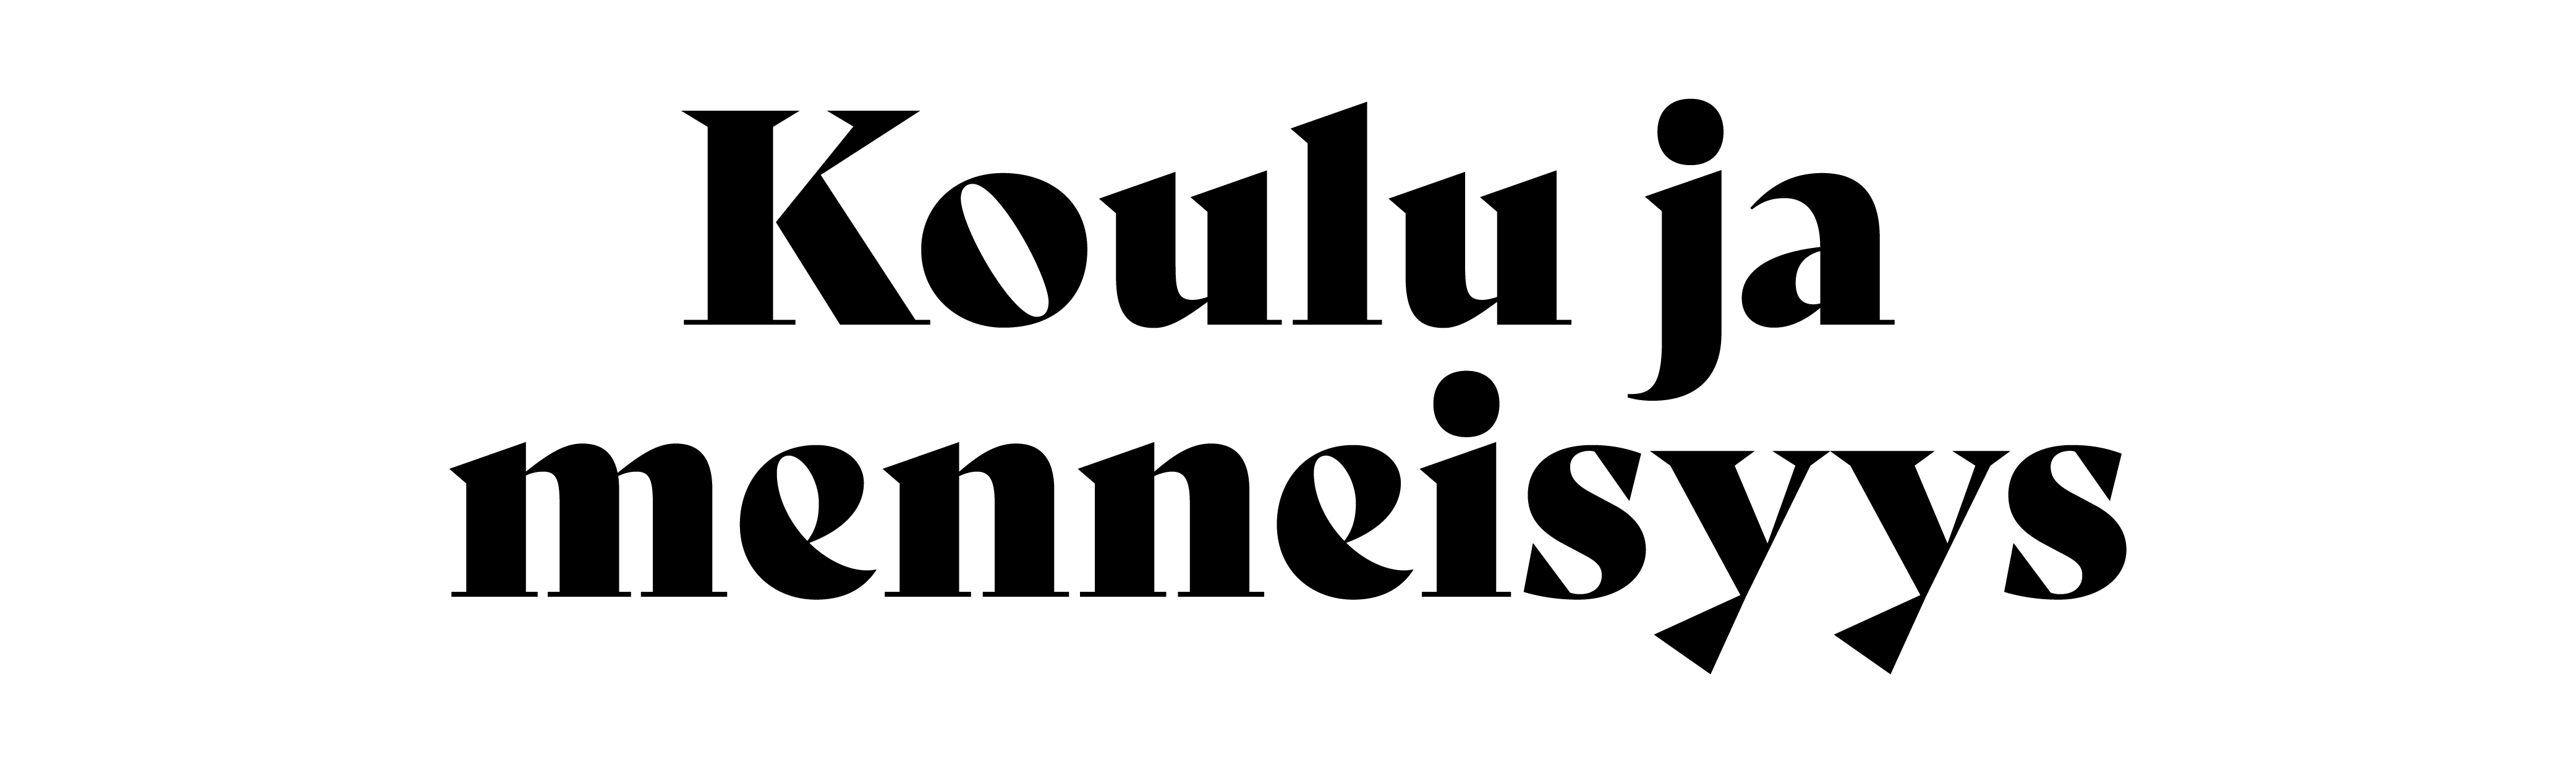 Koulu ja menneisyys -vuosikirjan logo.